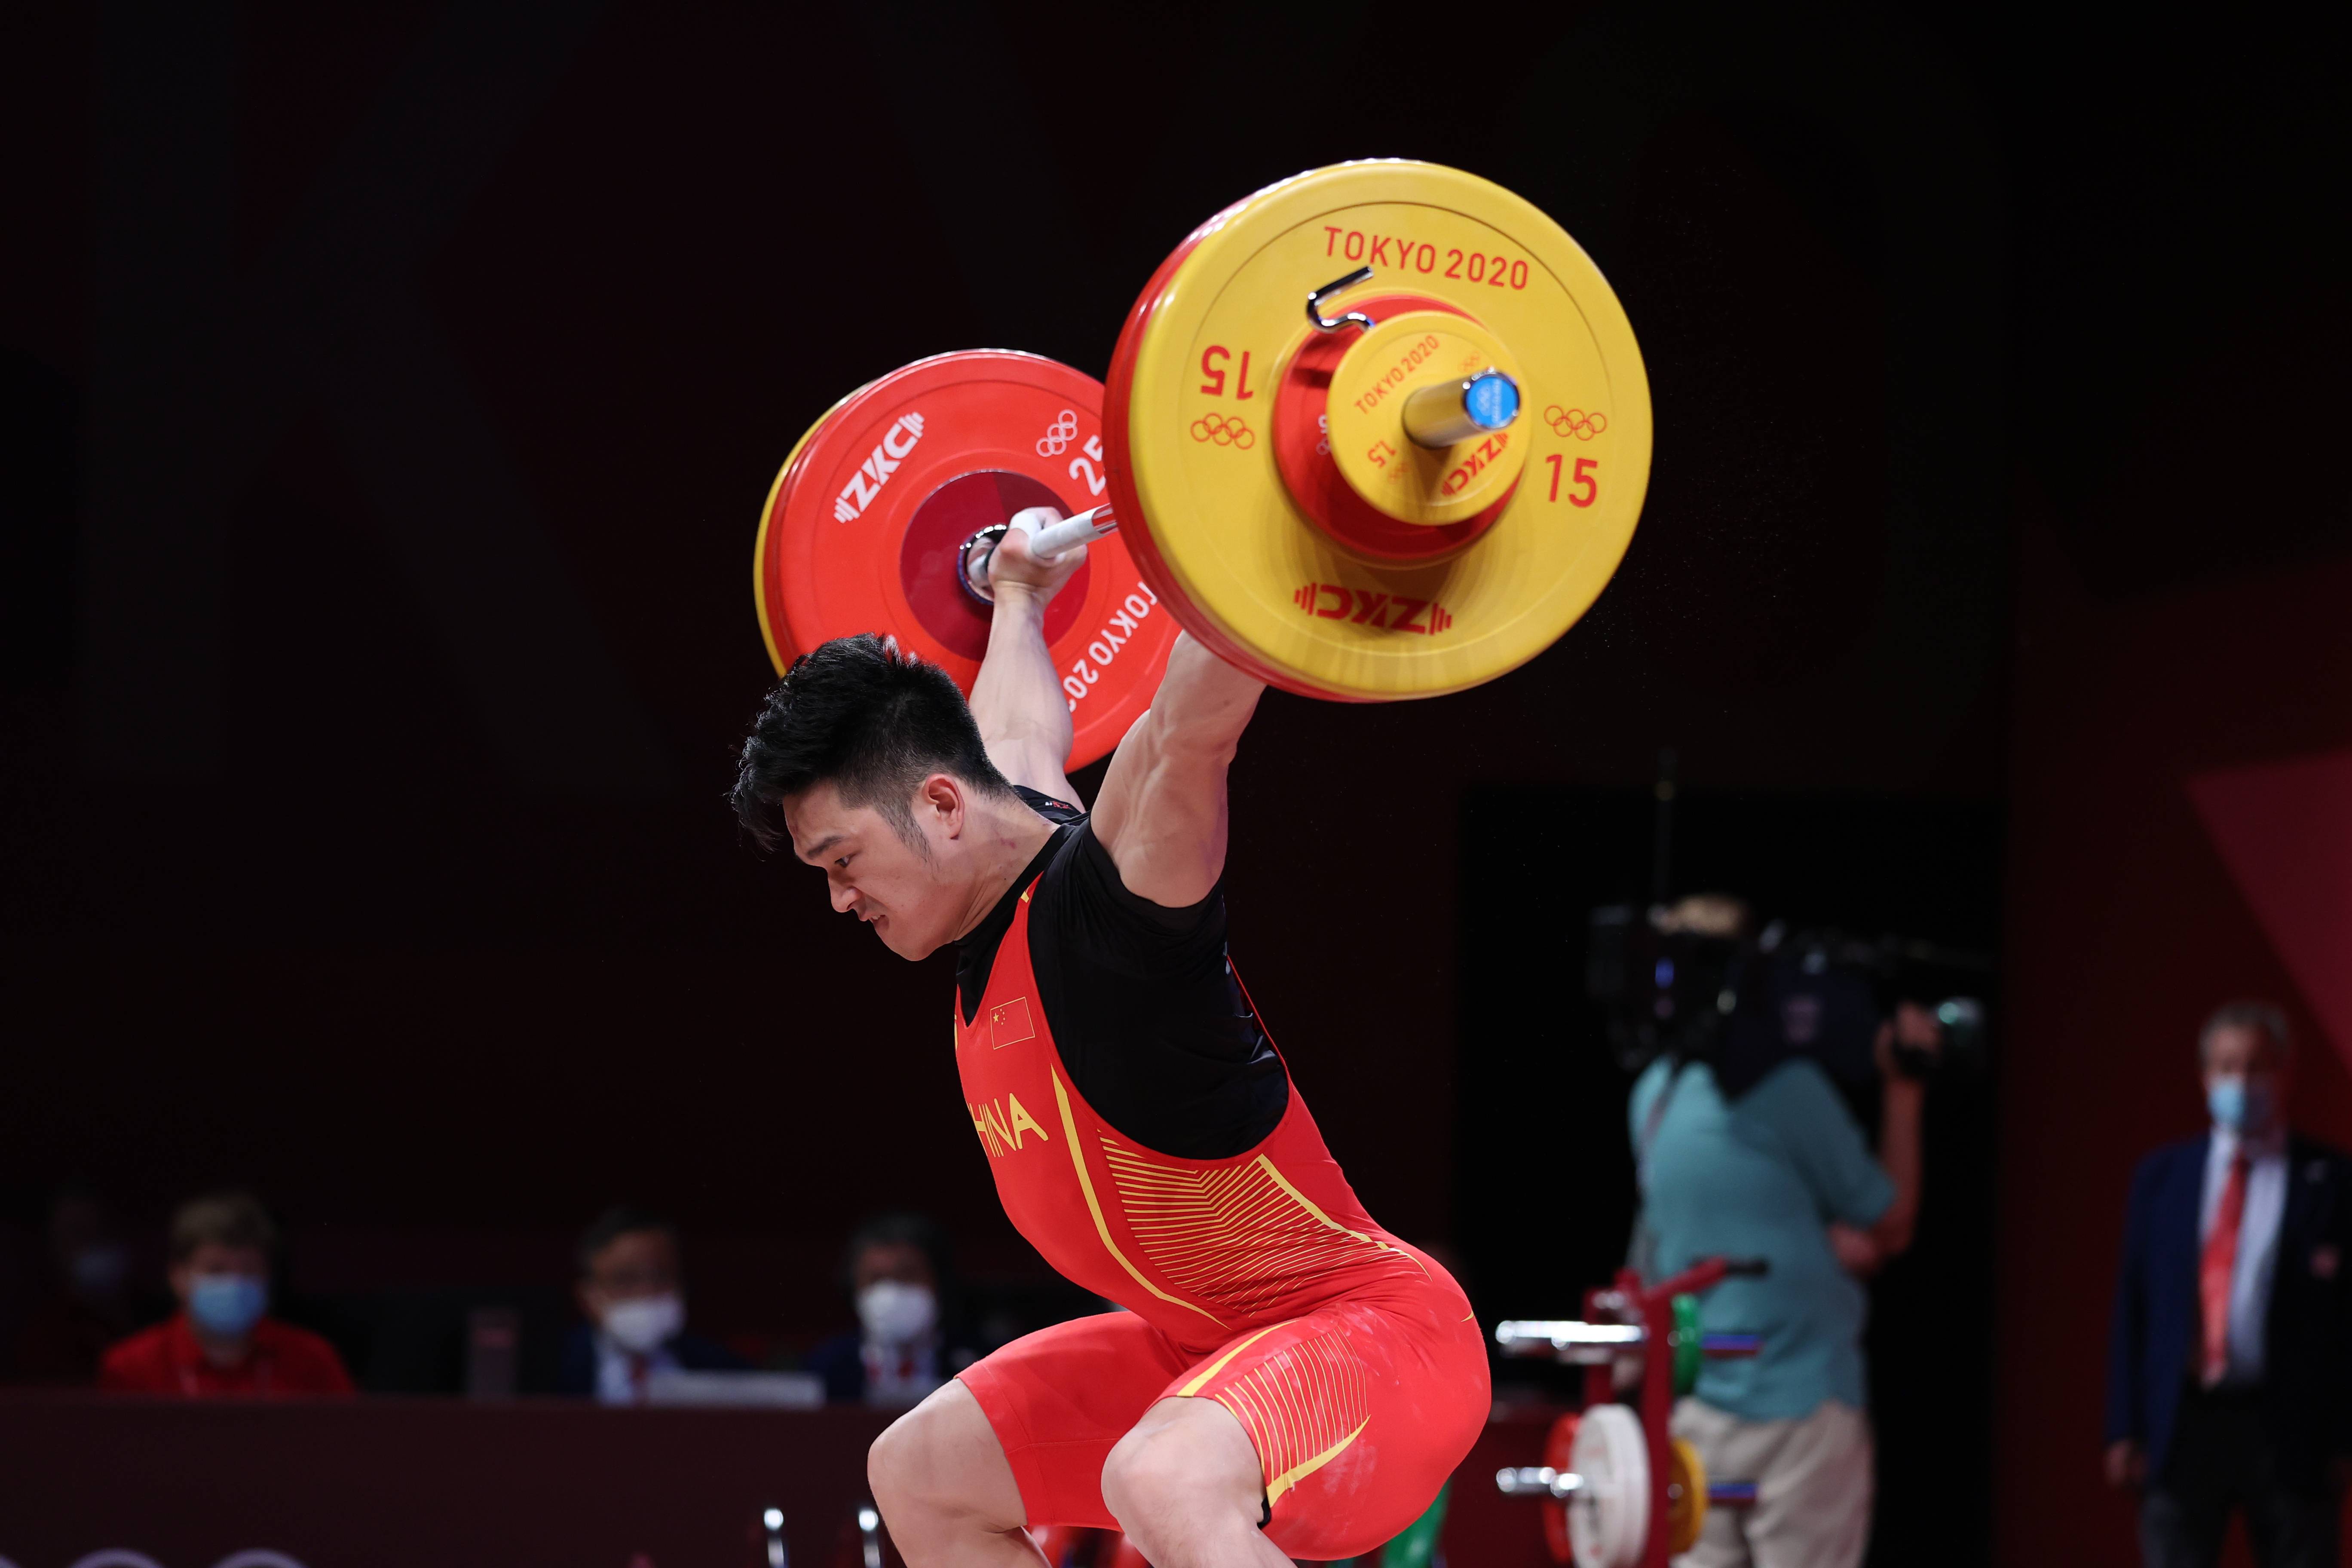 当日,东京奥运会举重男子73公斤级比赛在东京国际论坛大厦举行